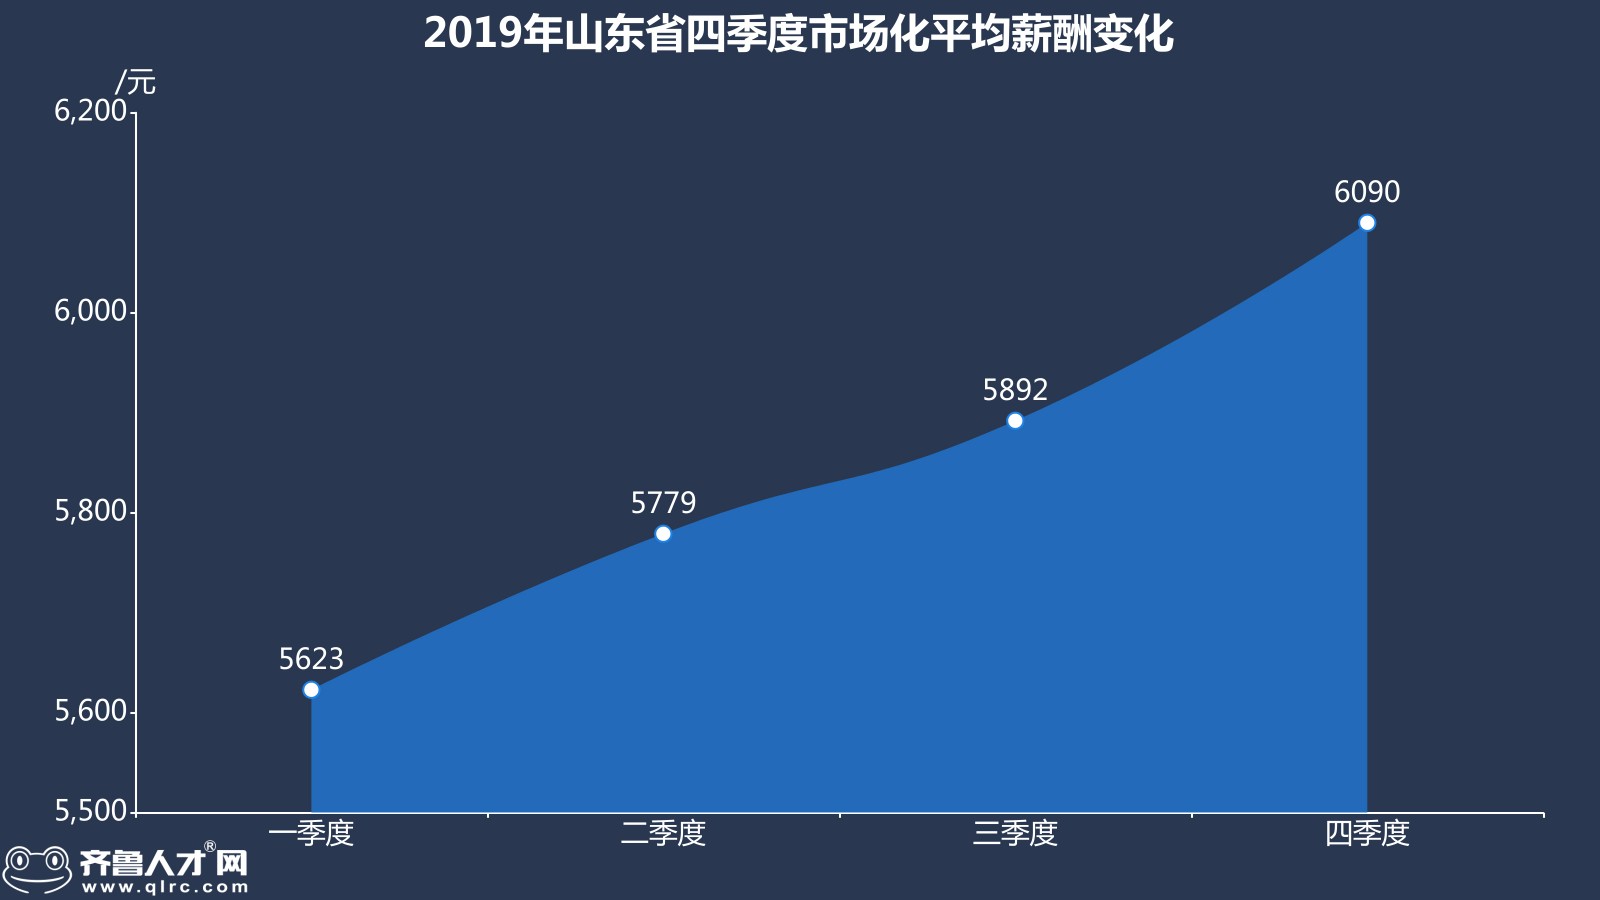 齐鲁人才网-2019年山东四季度薪酬数据图3.jpg